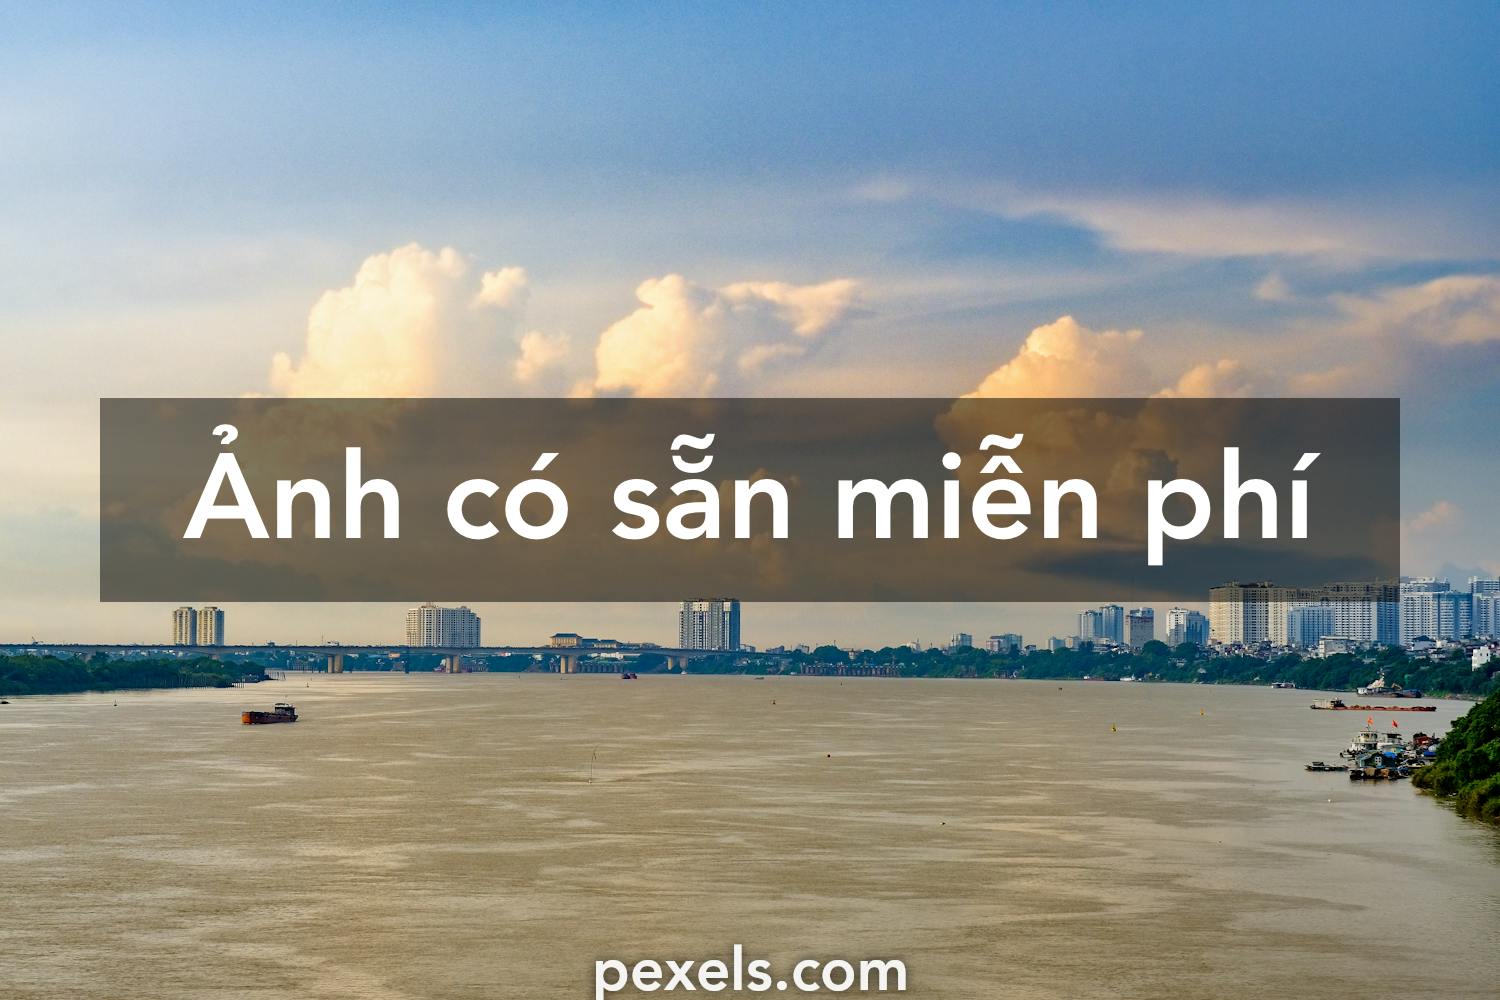 Hình ảnh Việt Nam đẹp nhất tải về miễn phí có được không?